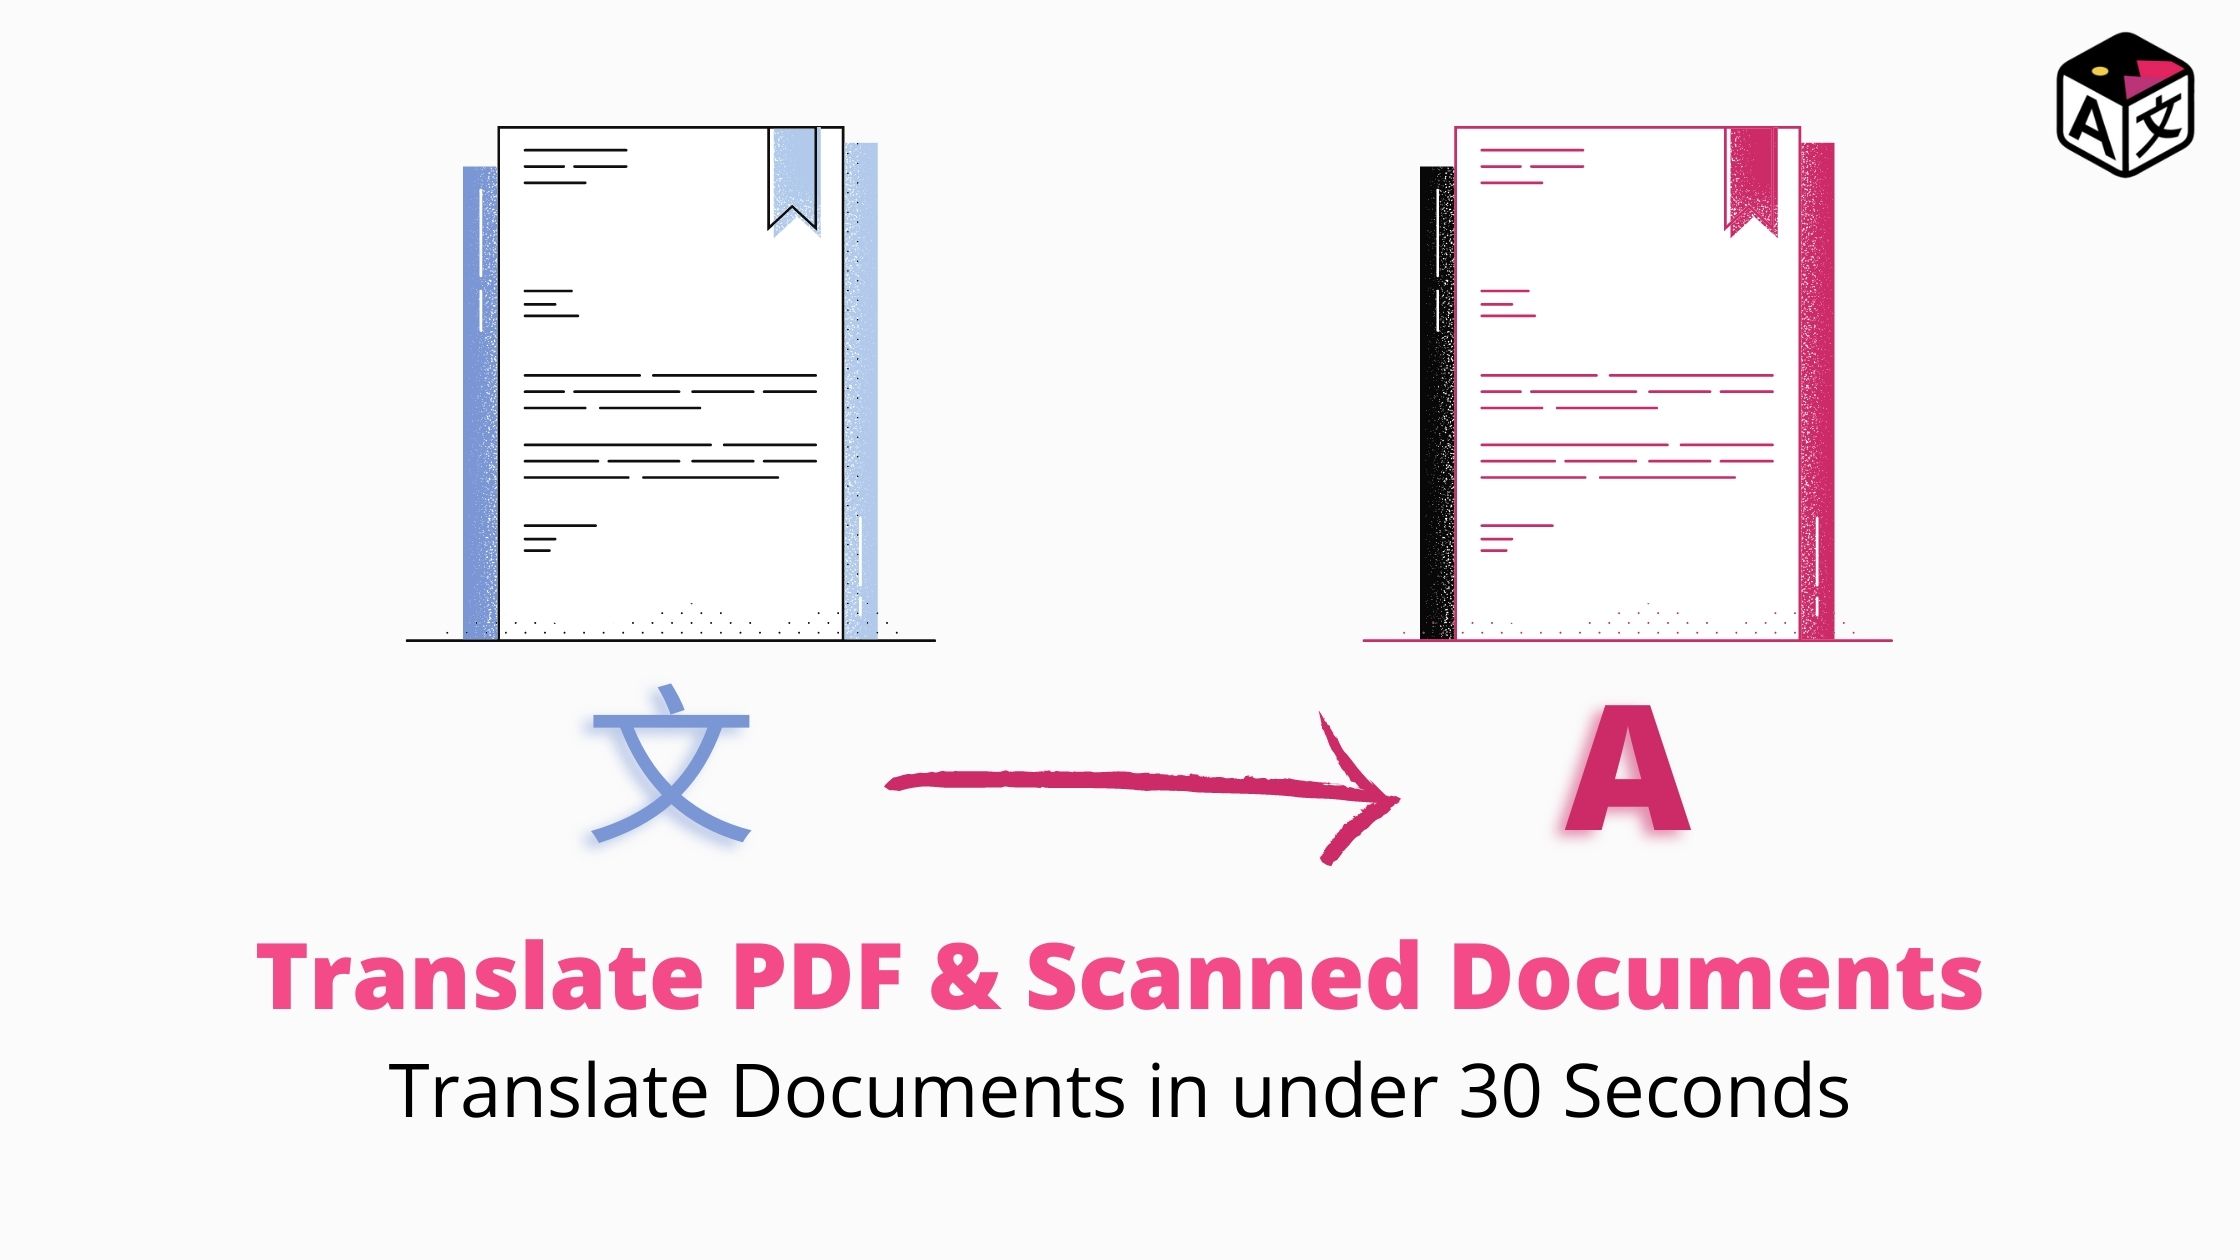 Перевести документы пдф на английский. Scan to pdf document creating.